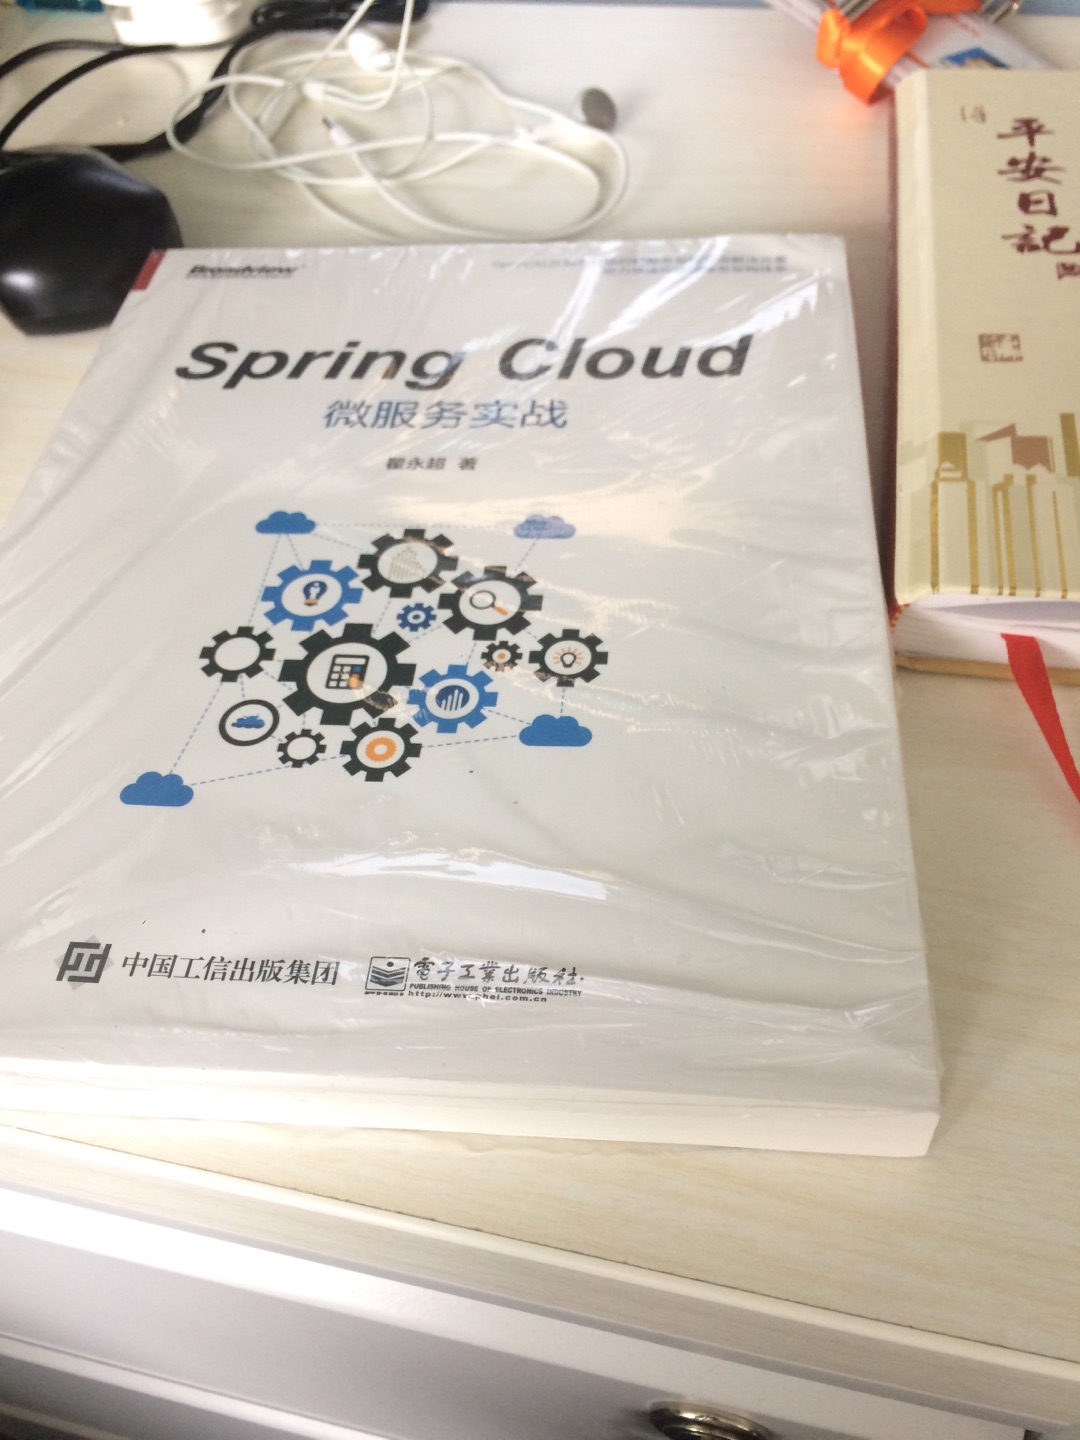 同事推荐买的一本书，项目上用得上。spring cloud、spring boot是主流框架了，值得深入学习。